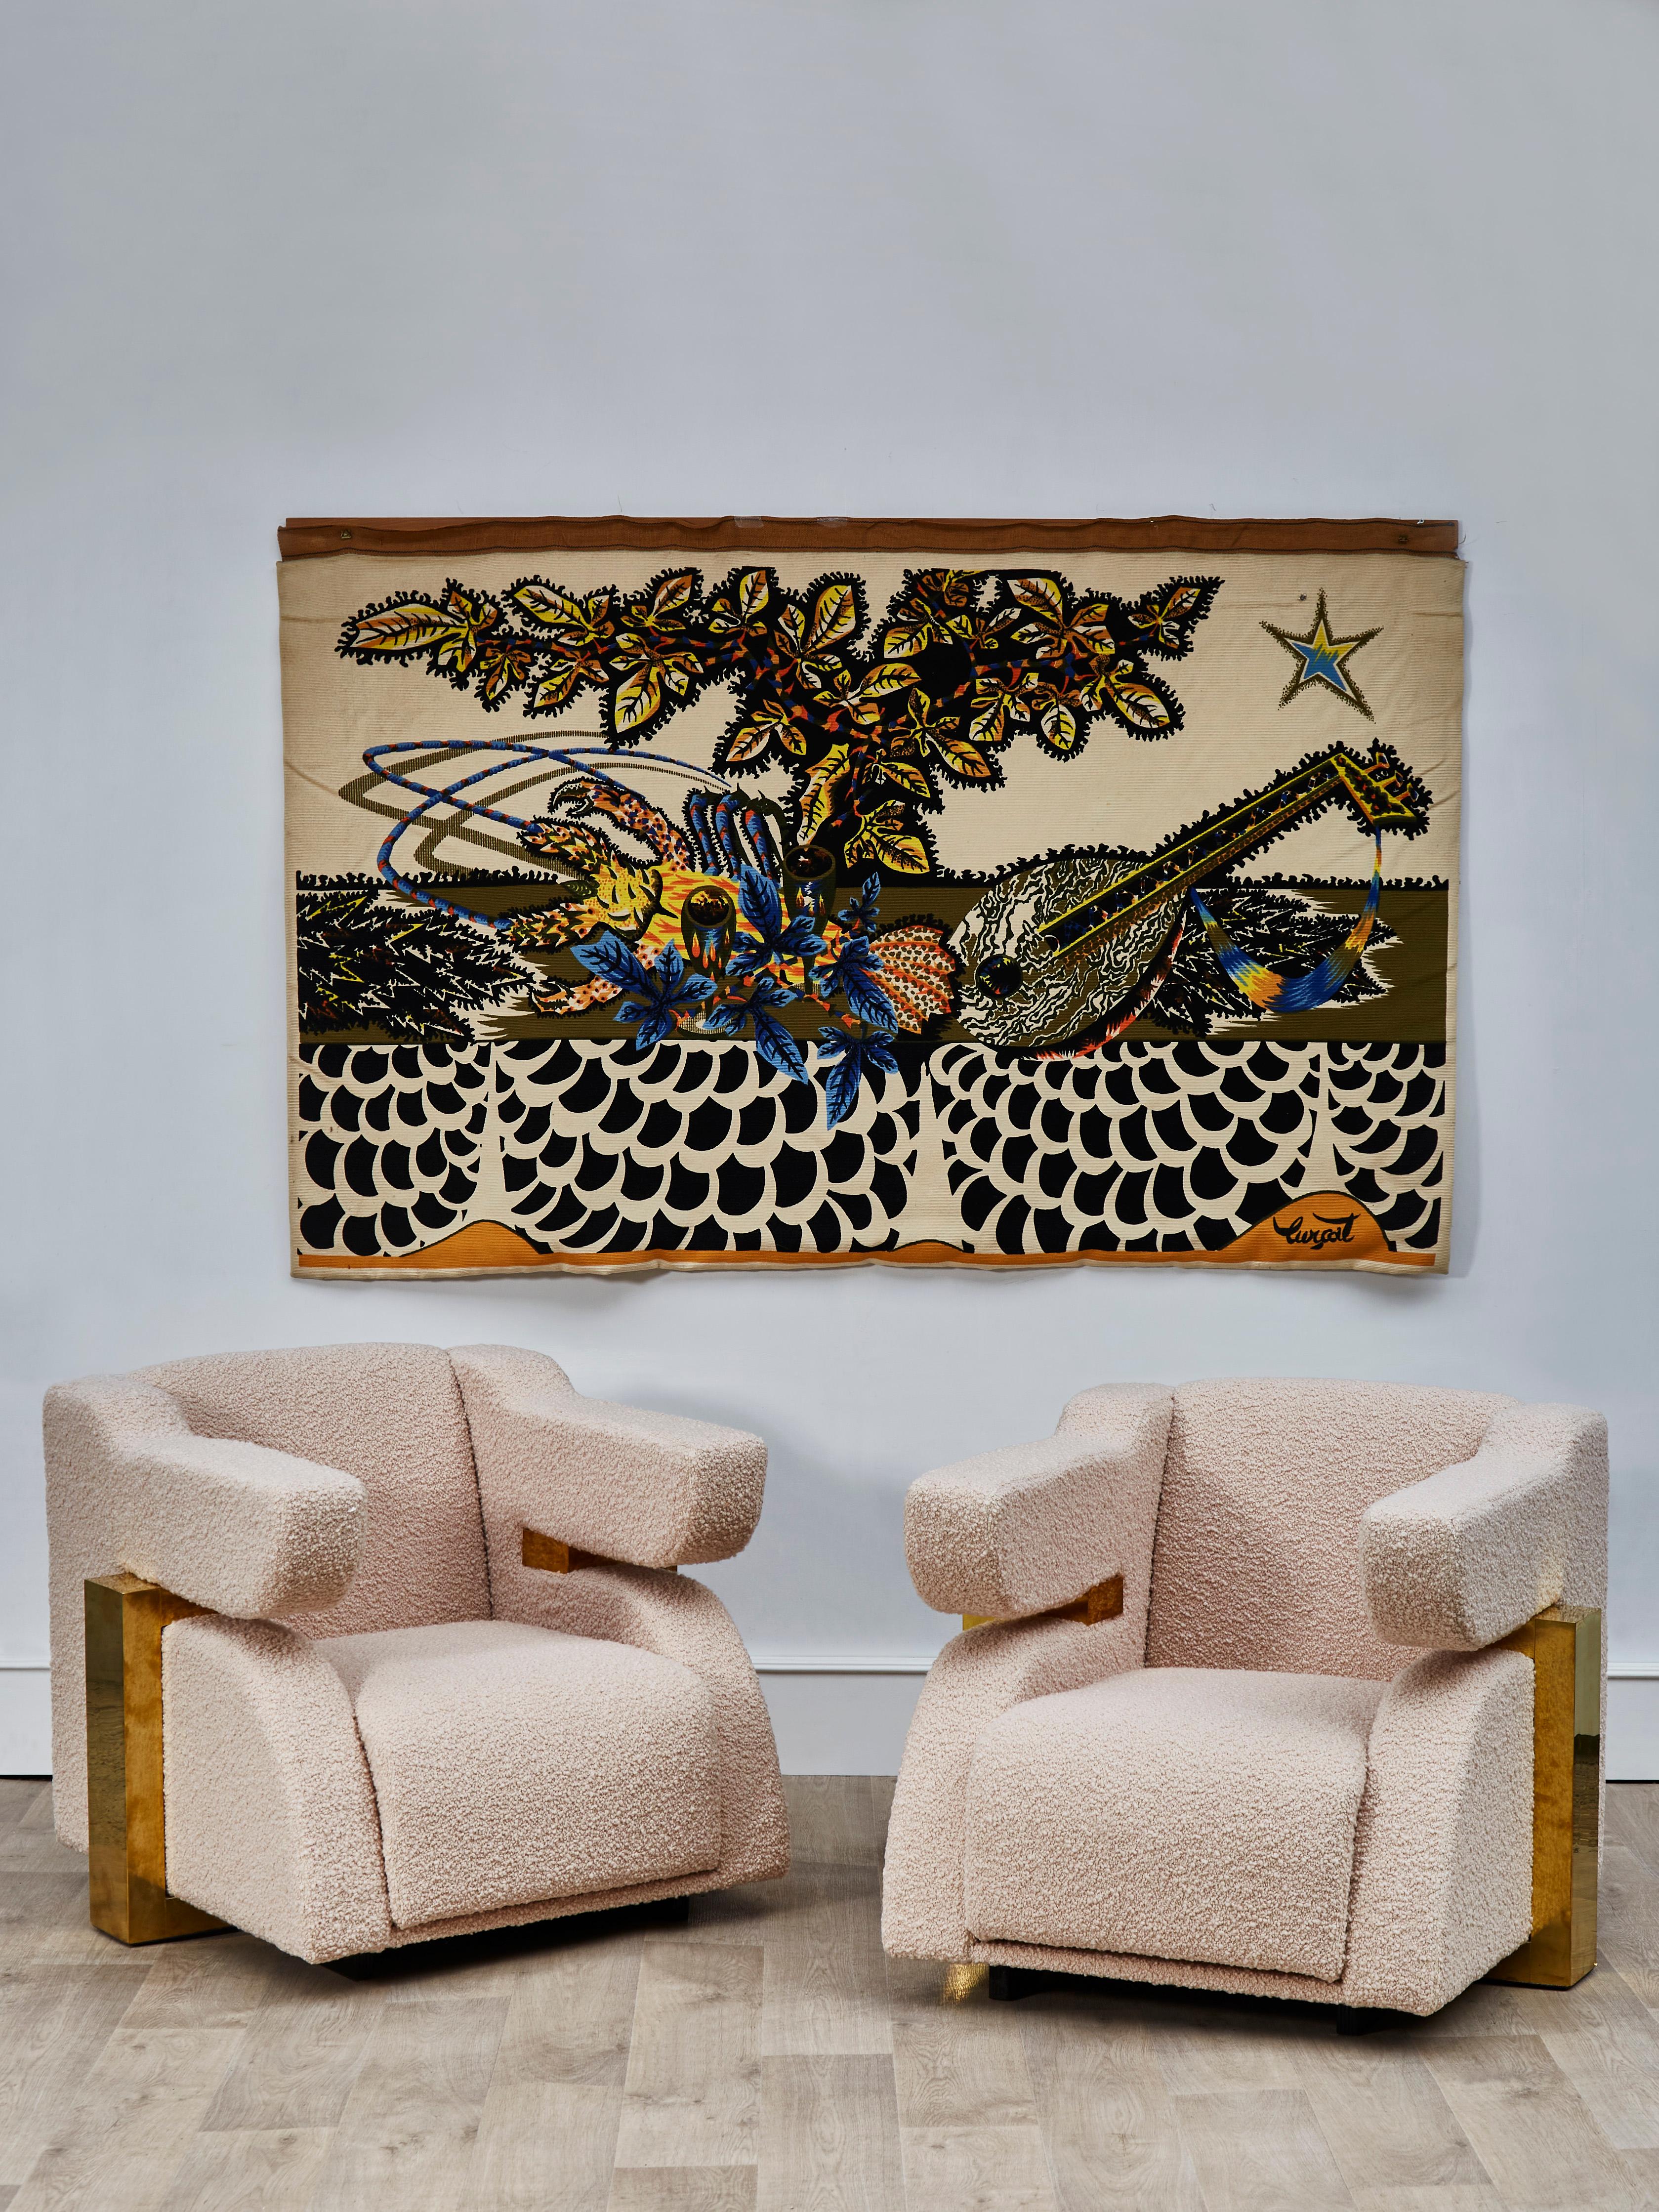 Superbe paire de fauteuils avec une structure en laiton tapissée d'un tissu à bouclette de Pierre Frey.
Création par le Studio Glustin.
(2 paires disponibles).